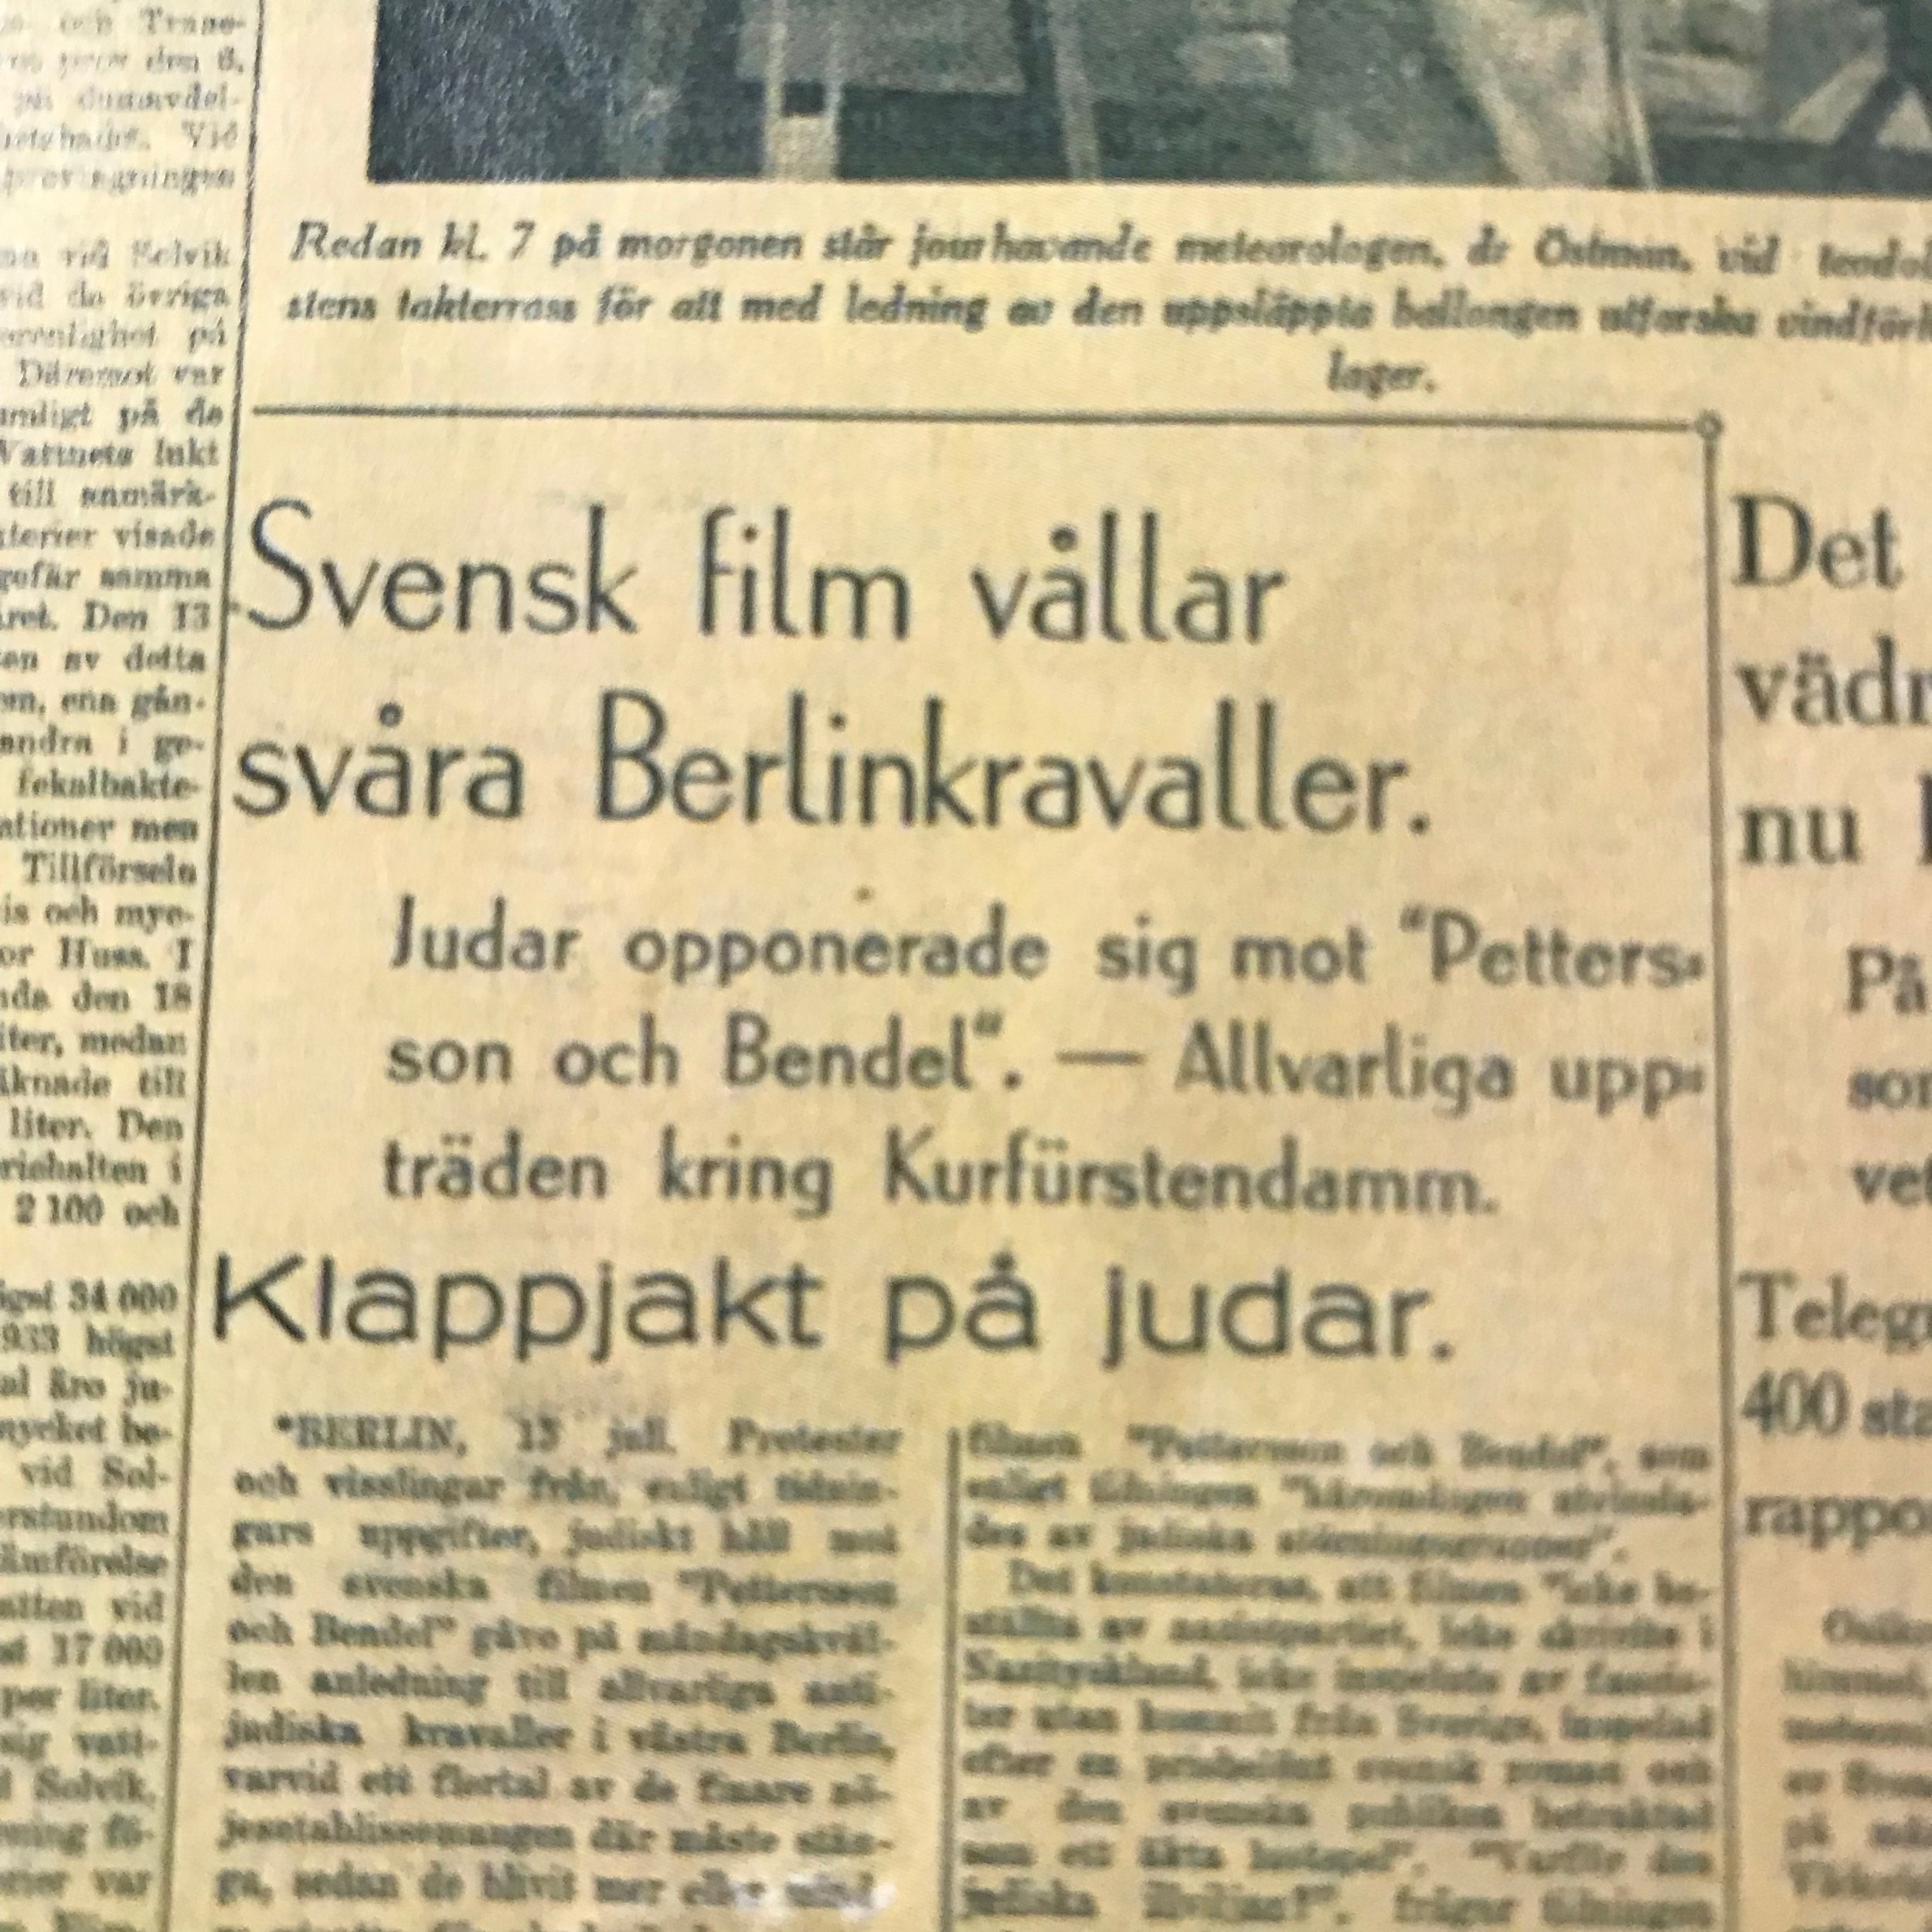 Svenska Dagbladet proklamerar ”Klappjakt på judar”